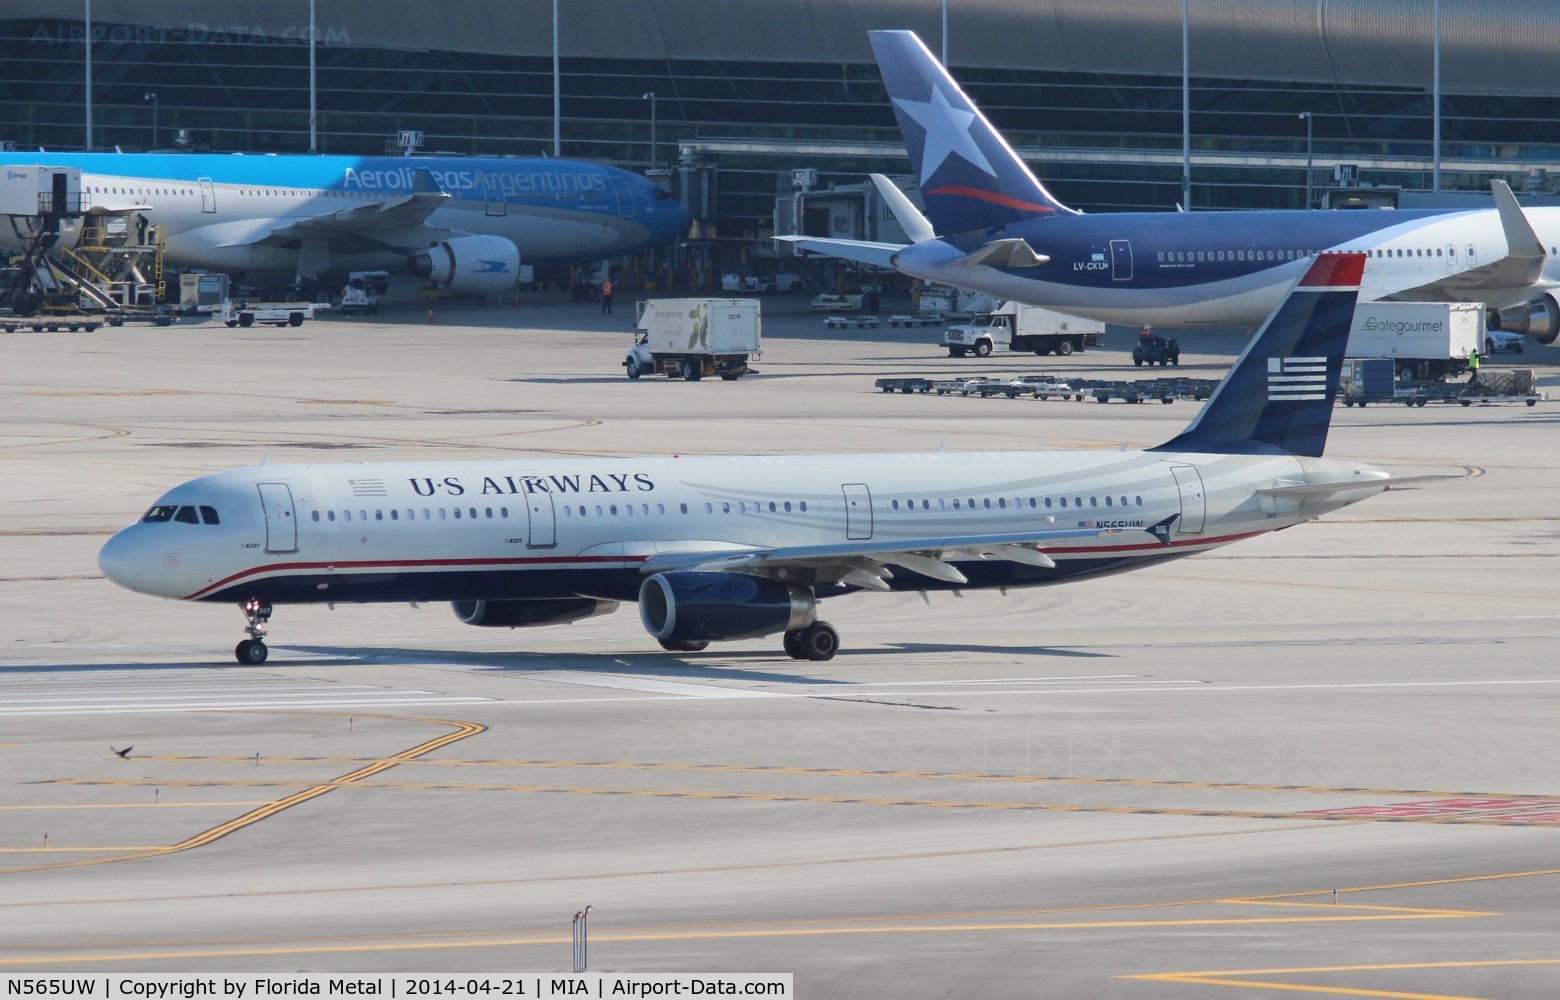 N565UW, 2012 Airbus A321-231 C/N 5409, USAirways